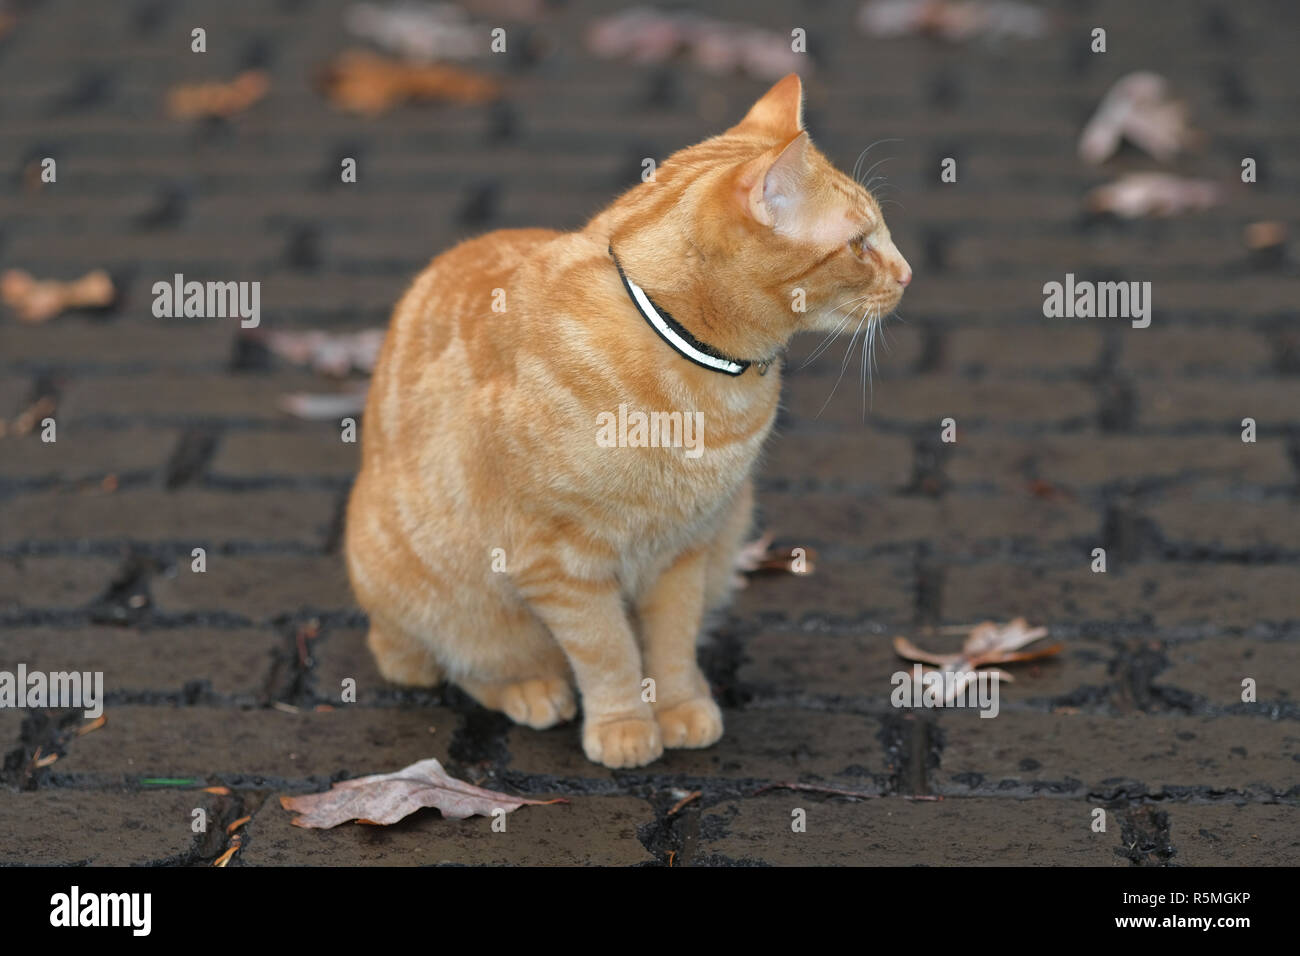 Orange tabby cat profile while sitting Stock Photo